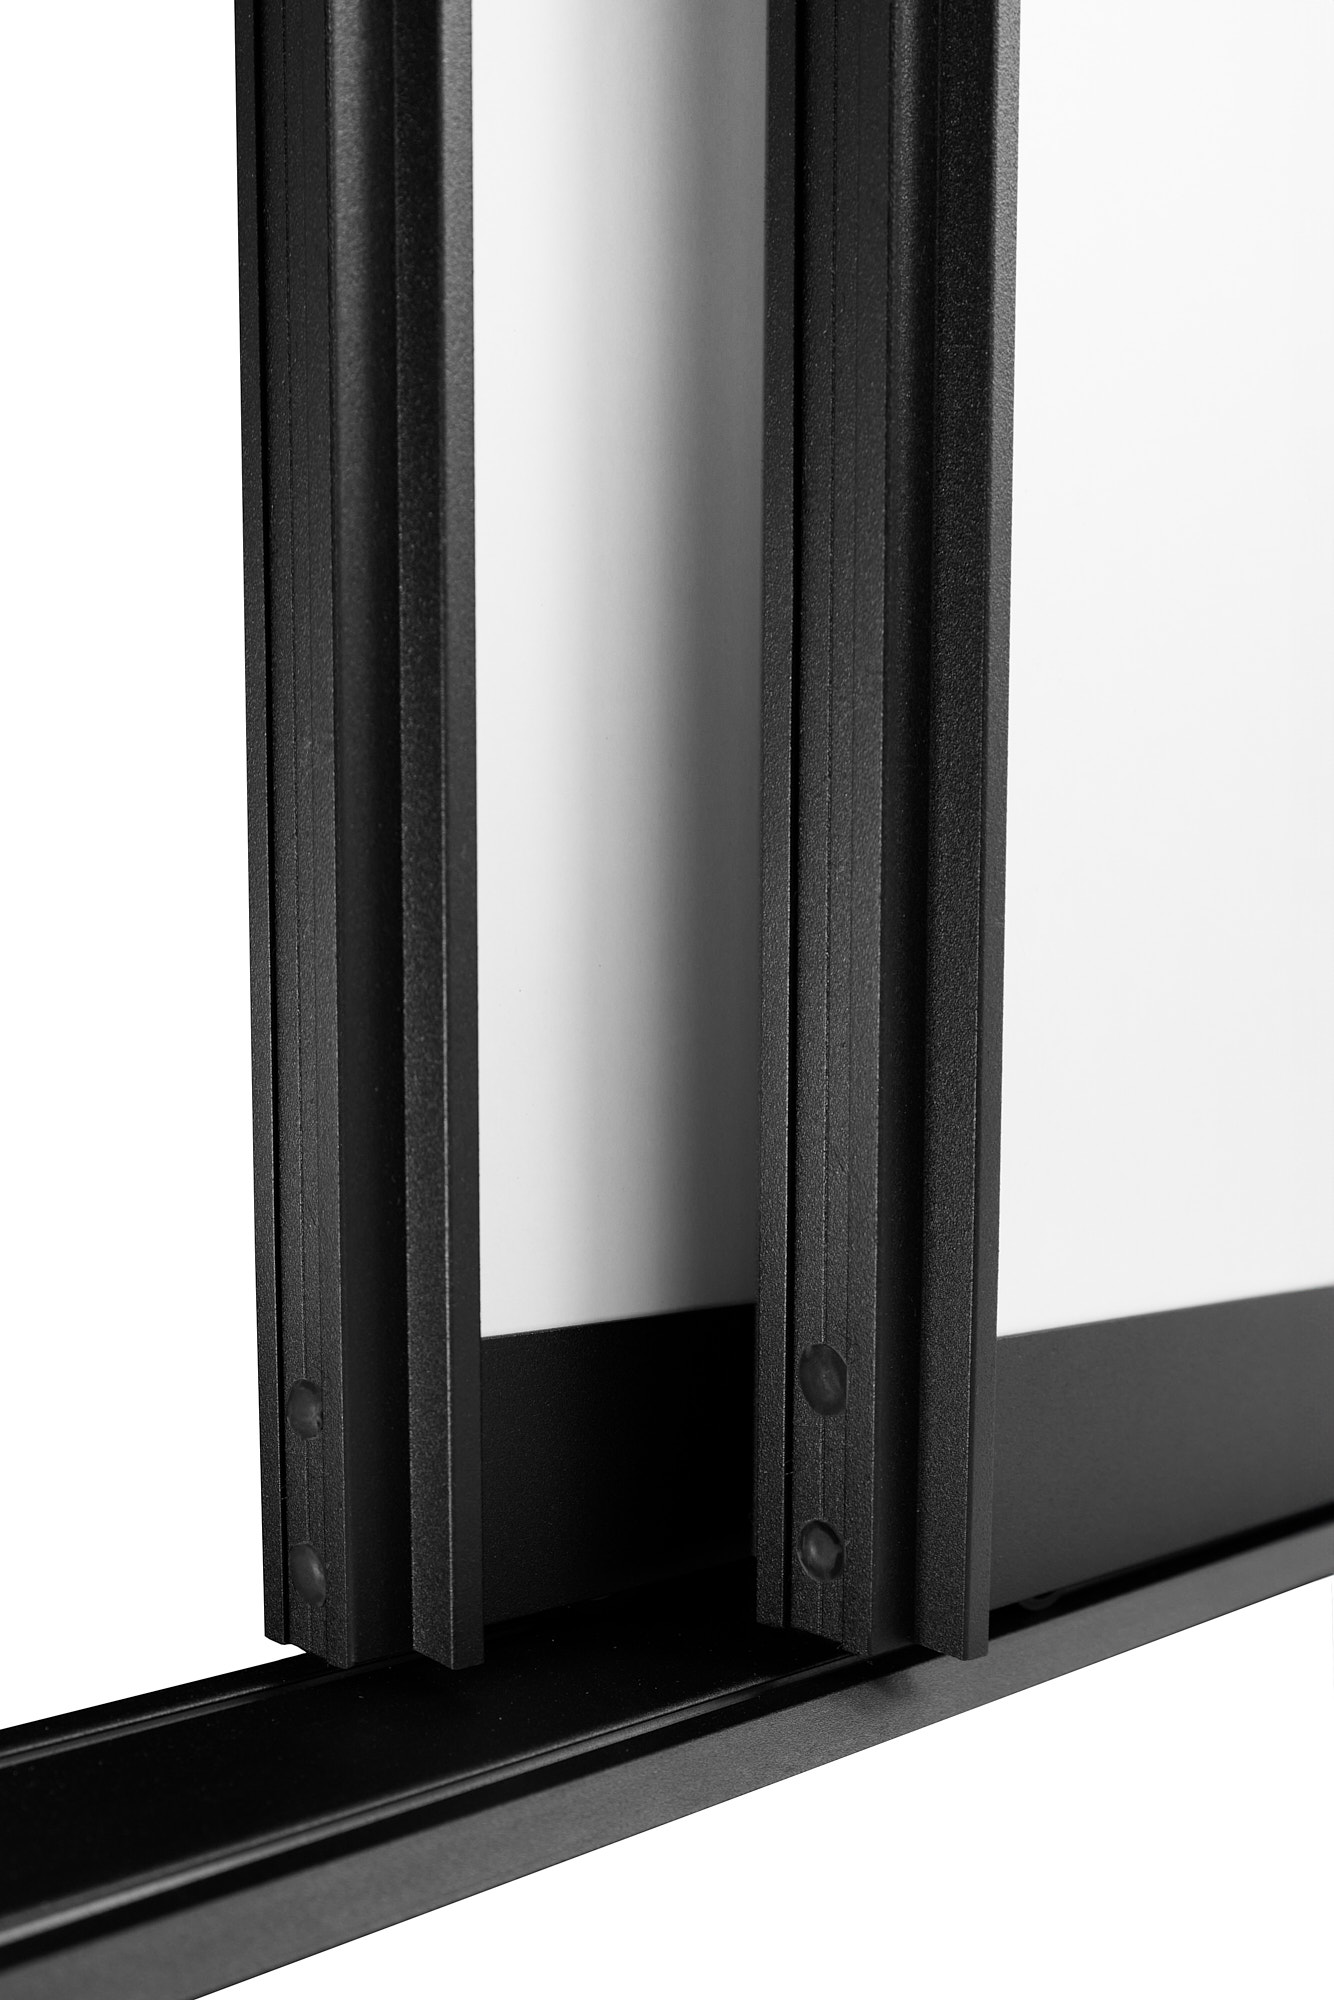 BS-Komfort mit Rahmentyp E Schwarz Rau |Lackierter Schiebetür-Bausatz Bodensystem für Schranktüren